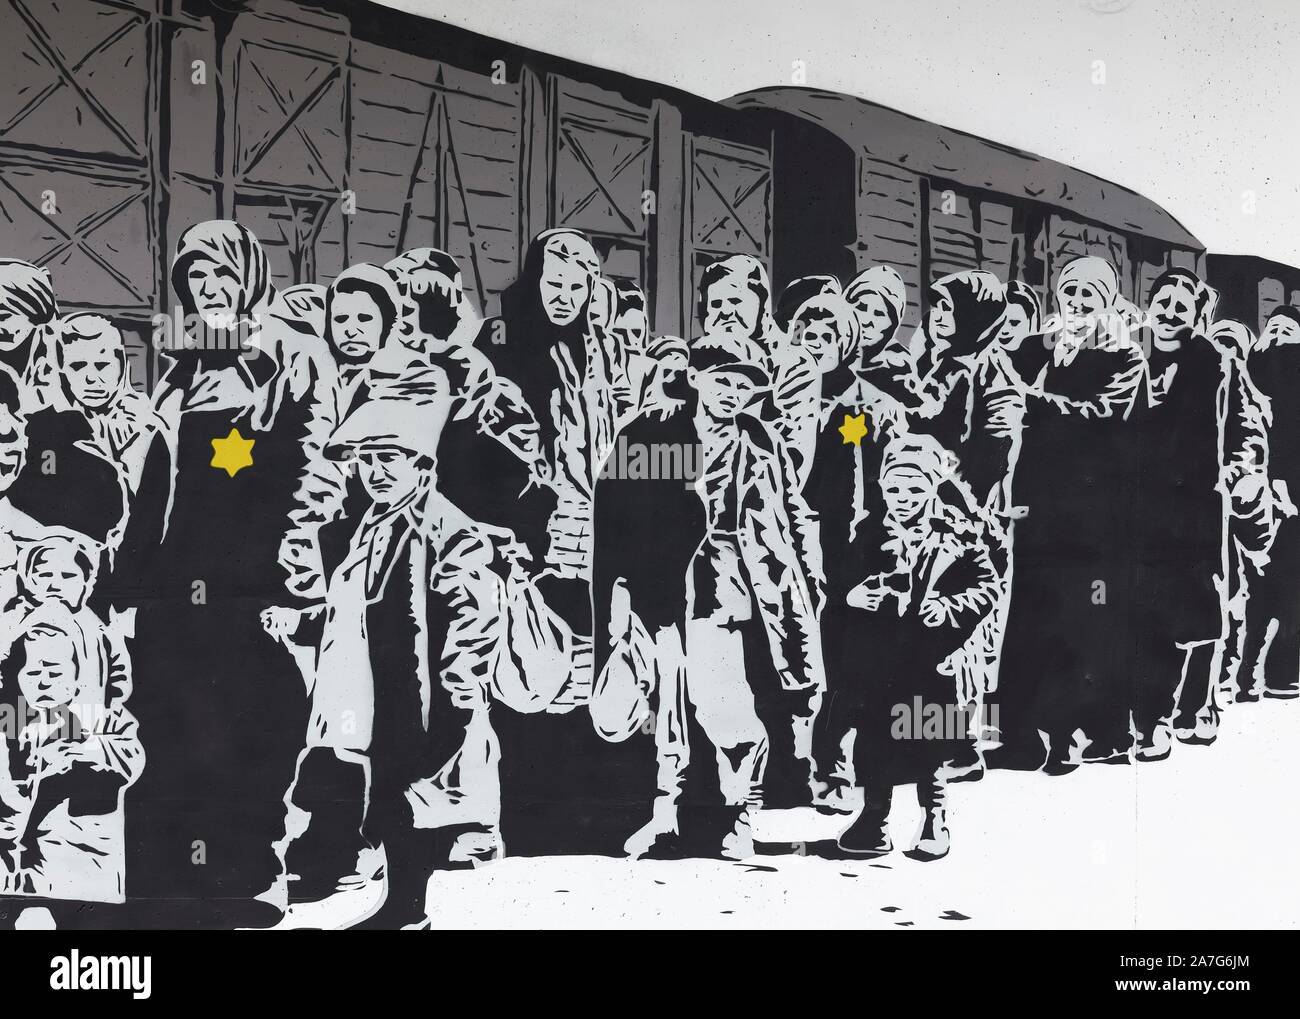 Spalte der Juden mit einem jüdischen Stern vor einem Güterwagen, Deportation, Holocaust, Wandmalerei von street artist Lücke, 40 Grad Urban Art Festival 2019 Stockfoto